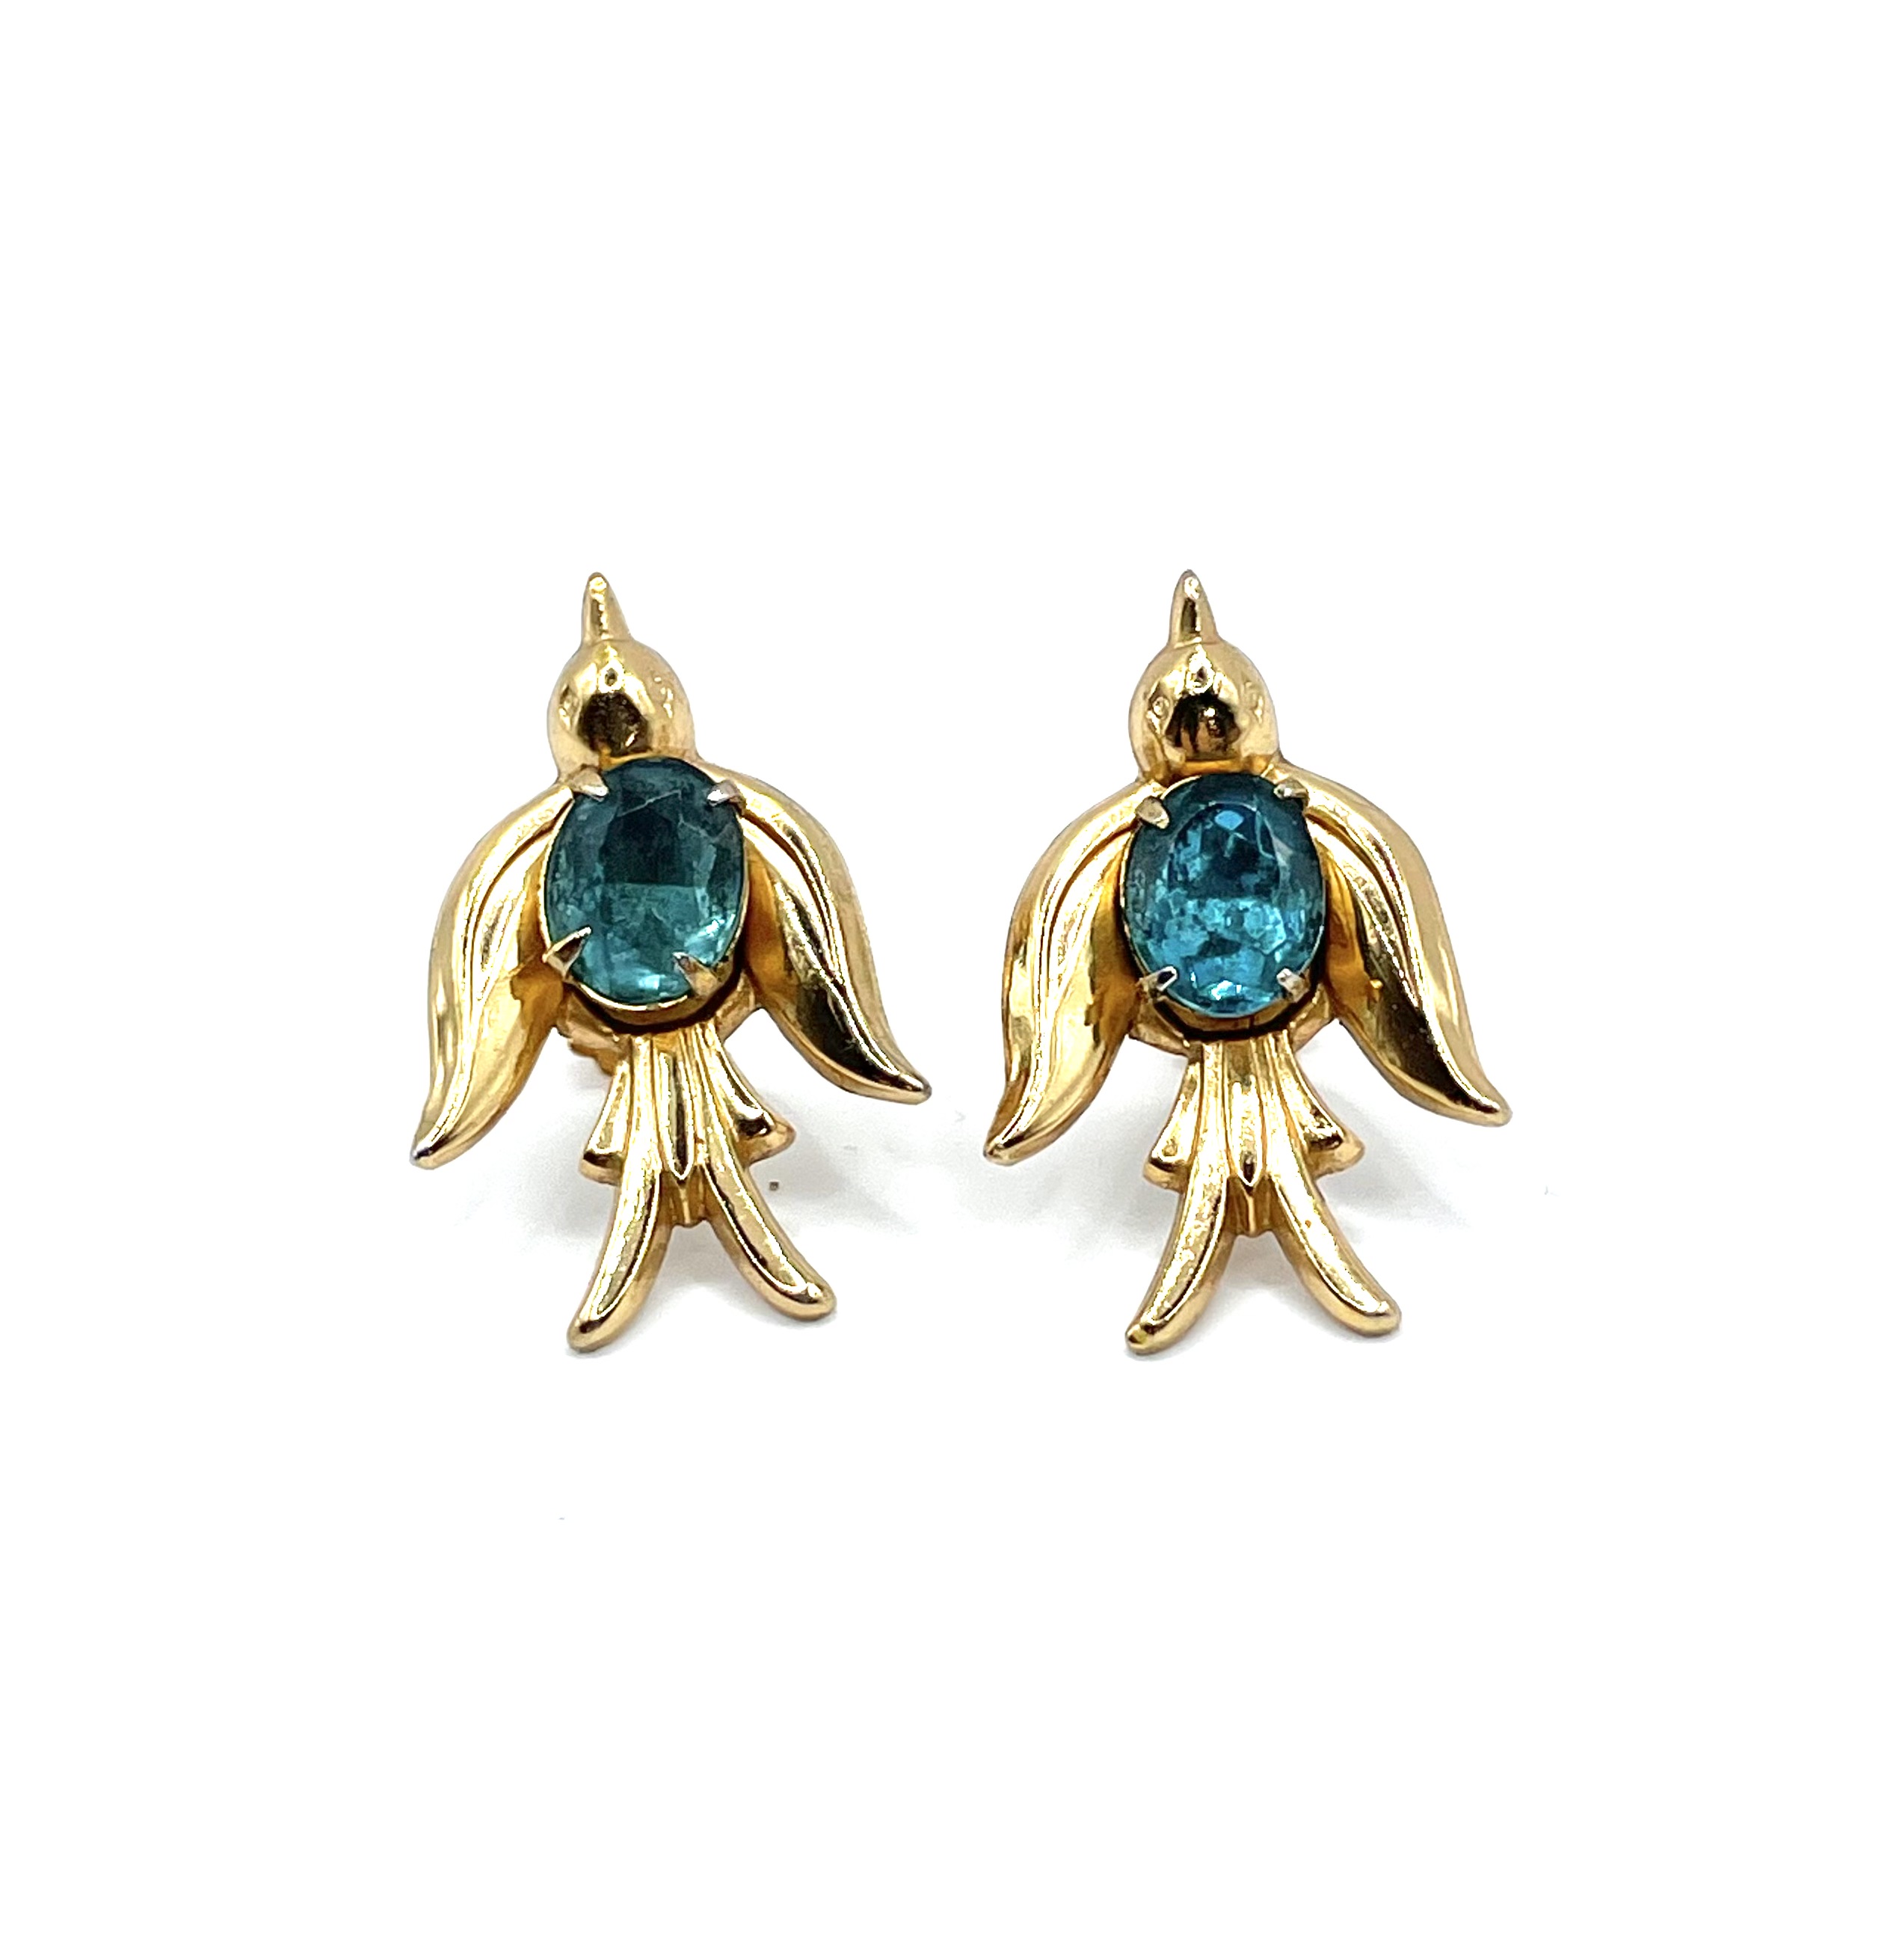 Coro swift bird earrings